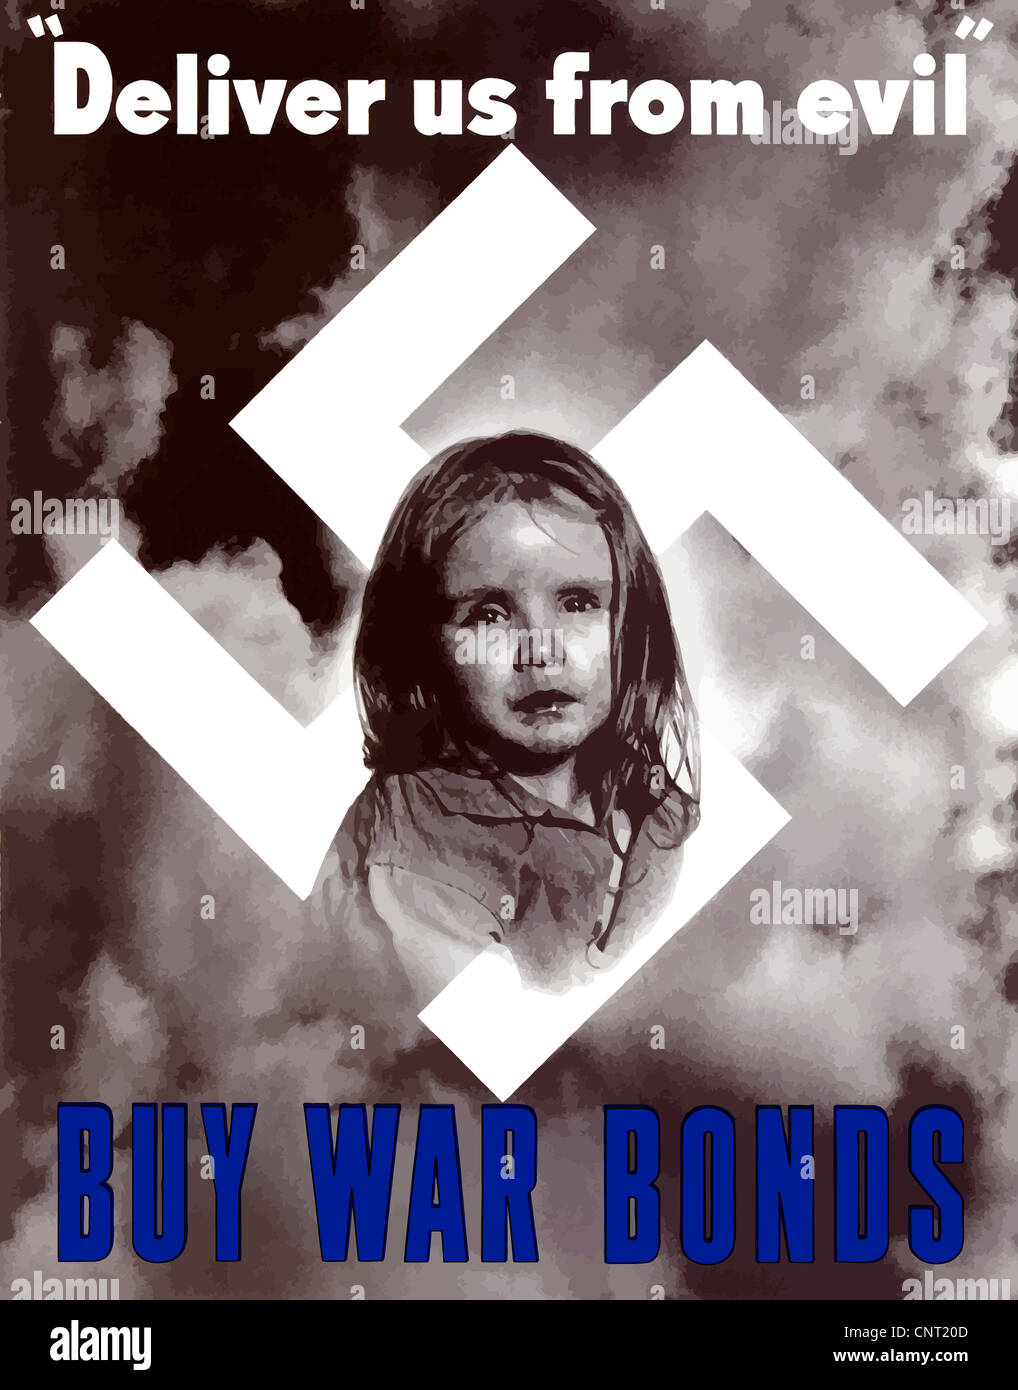 Ce millésime La Seconde Guerre mondiale poster dispose d'une petite fille pleurer en face de swastika et un fond orageux. Banque D'Images